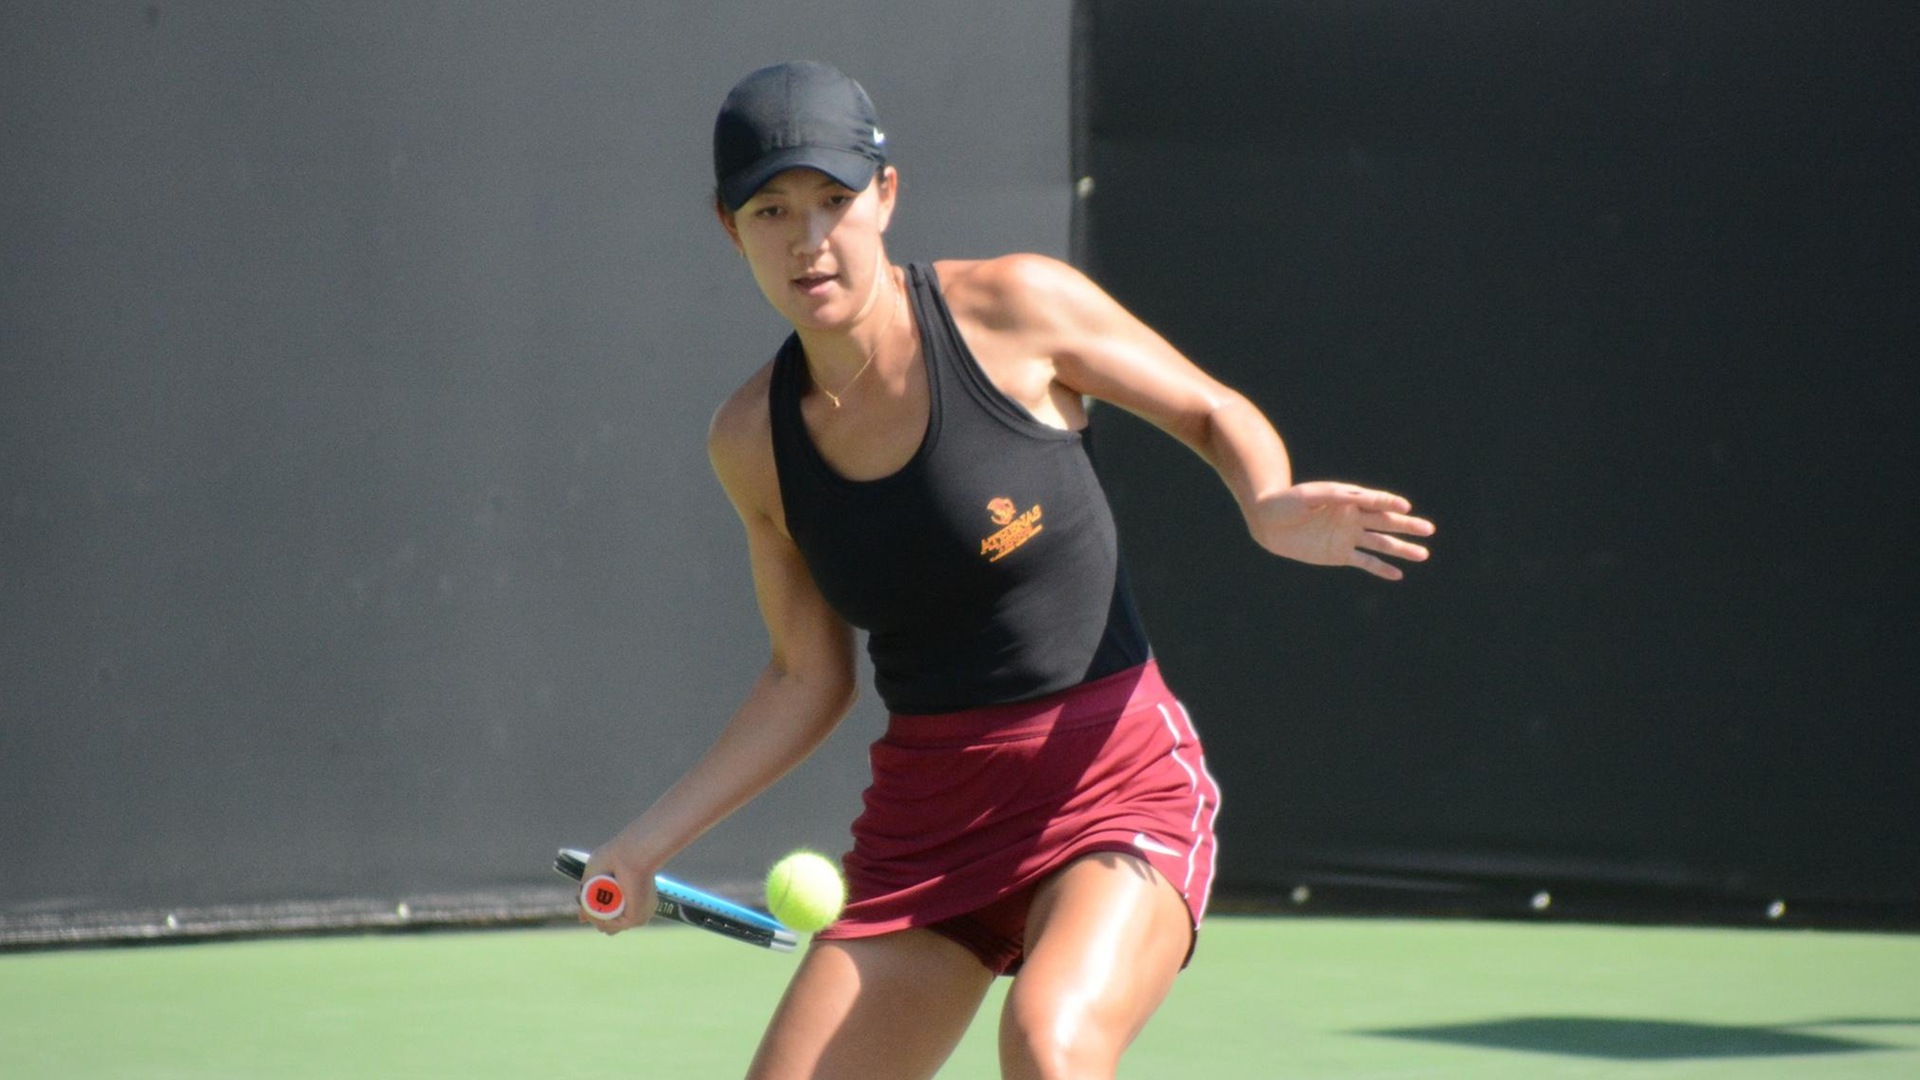 Crystal Juan earned a 6-4, 6-1 win at No. 1 singles